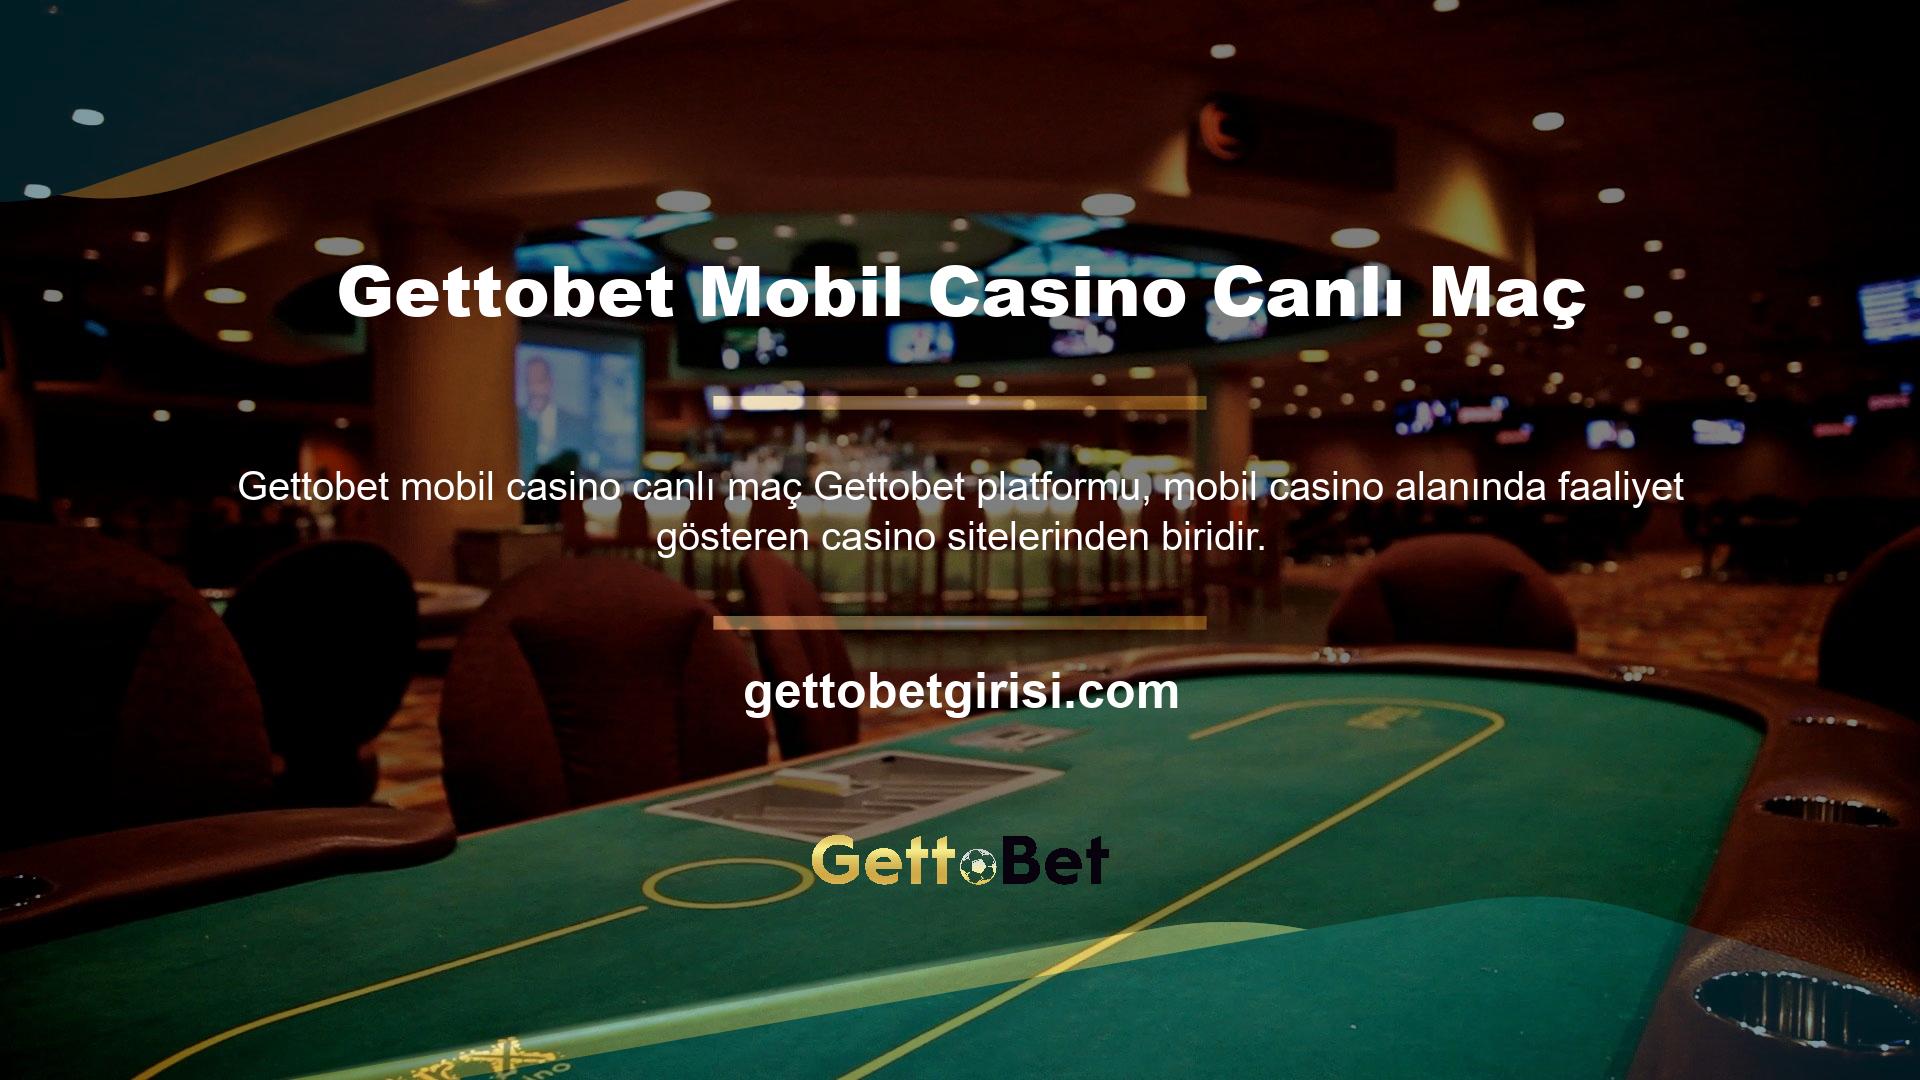 Site onlarca farklı casinoya ev sahipliği yapıyor ve oyun altyapısıyla iyi çalıştığı biliniyor